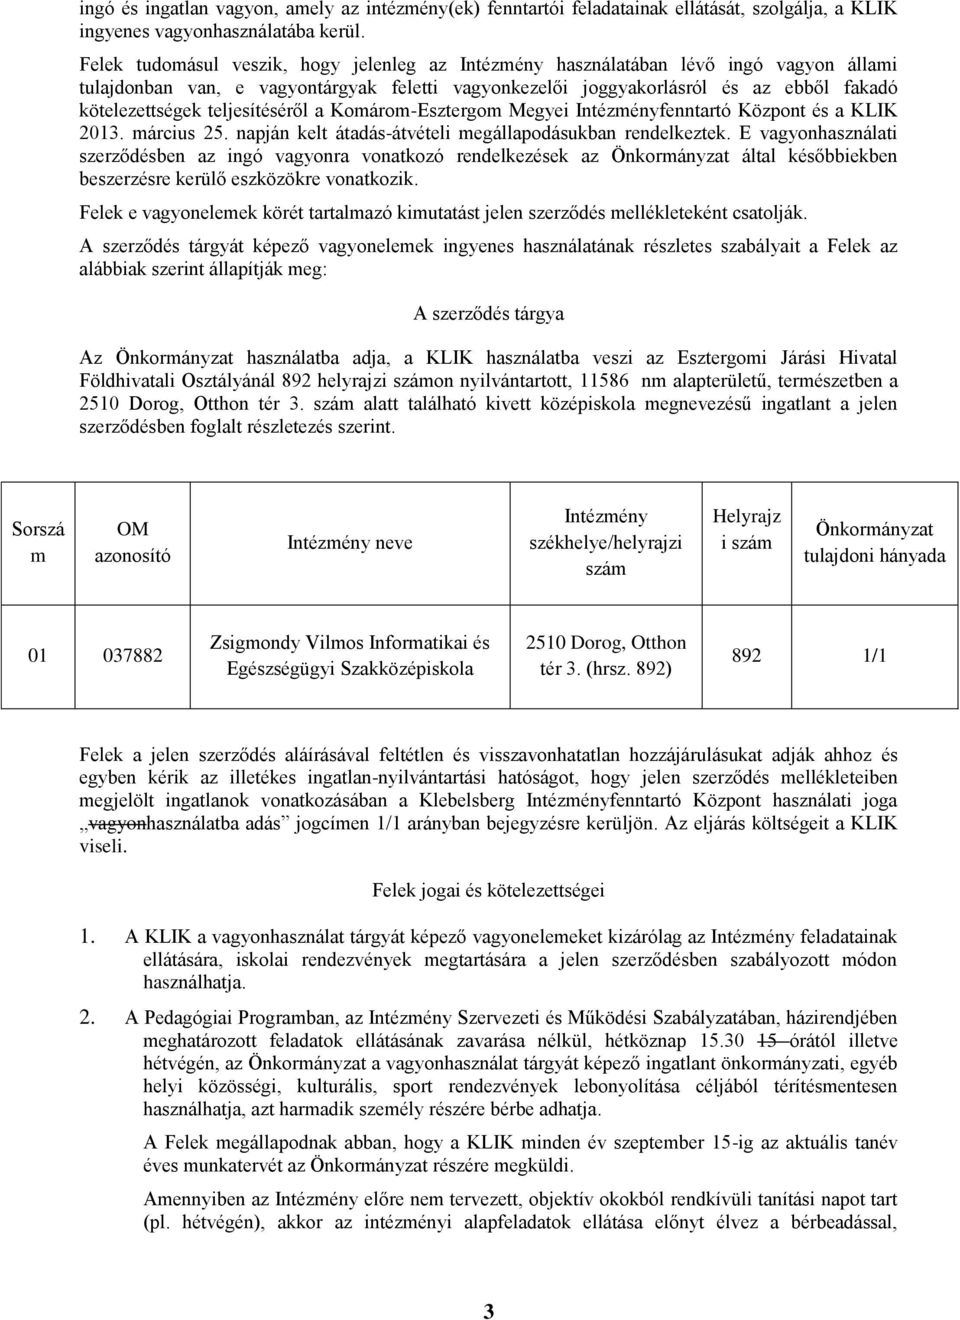 teljesítéséről a Komárom-Esztergom Megyei Intézményfenntartó Központ és a KLIK 2013. március 25. napján kelt átadás-átvételi megállapodásukban rendelkeztek.